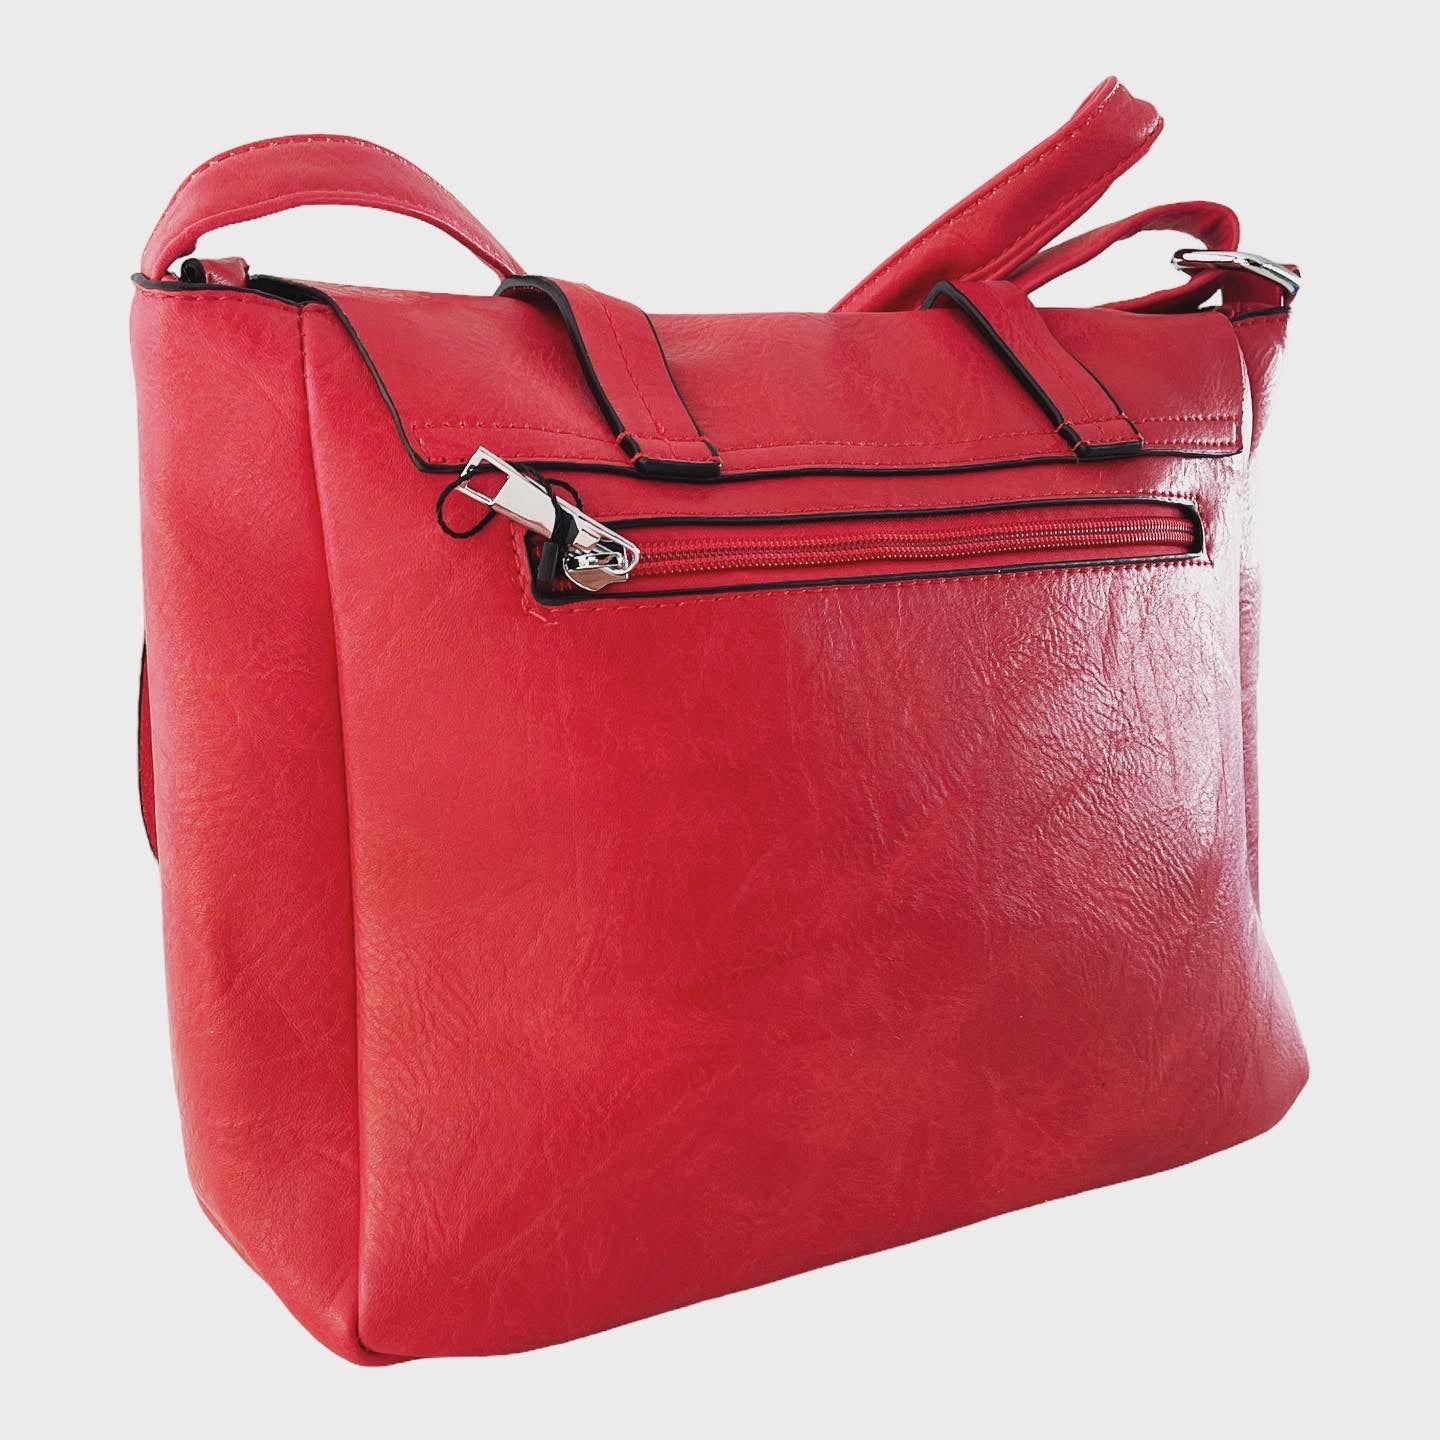 Rote Mädchentasche aus Kunstleder mit doppeltem Druckknopf und dreifachem Reißverschluss